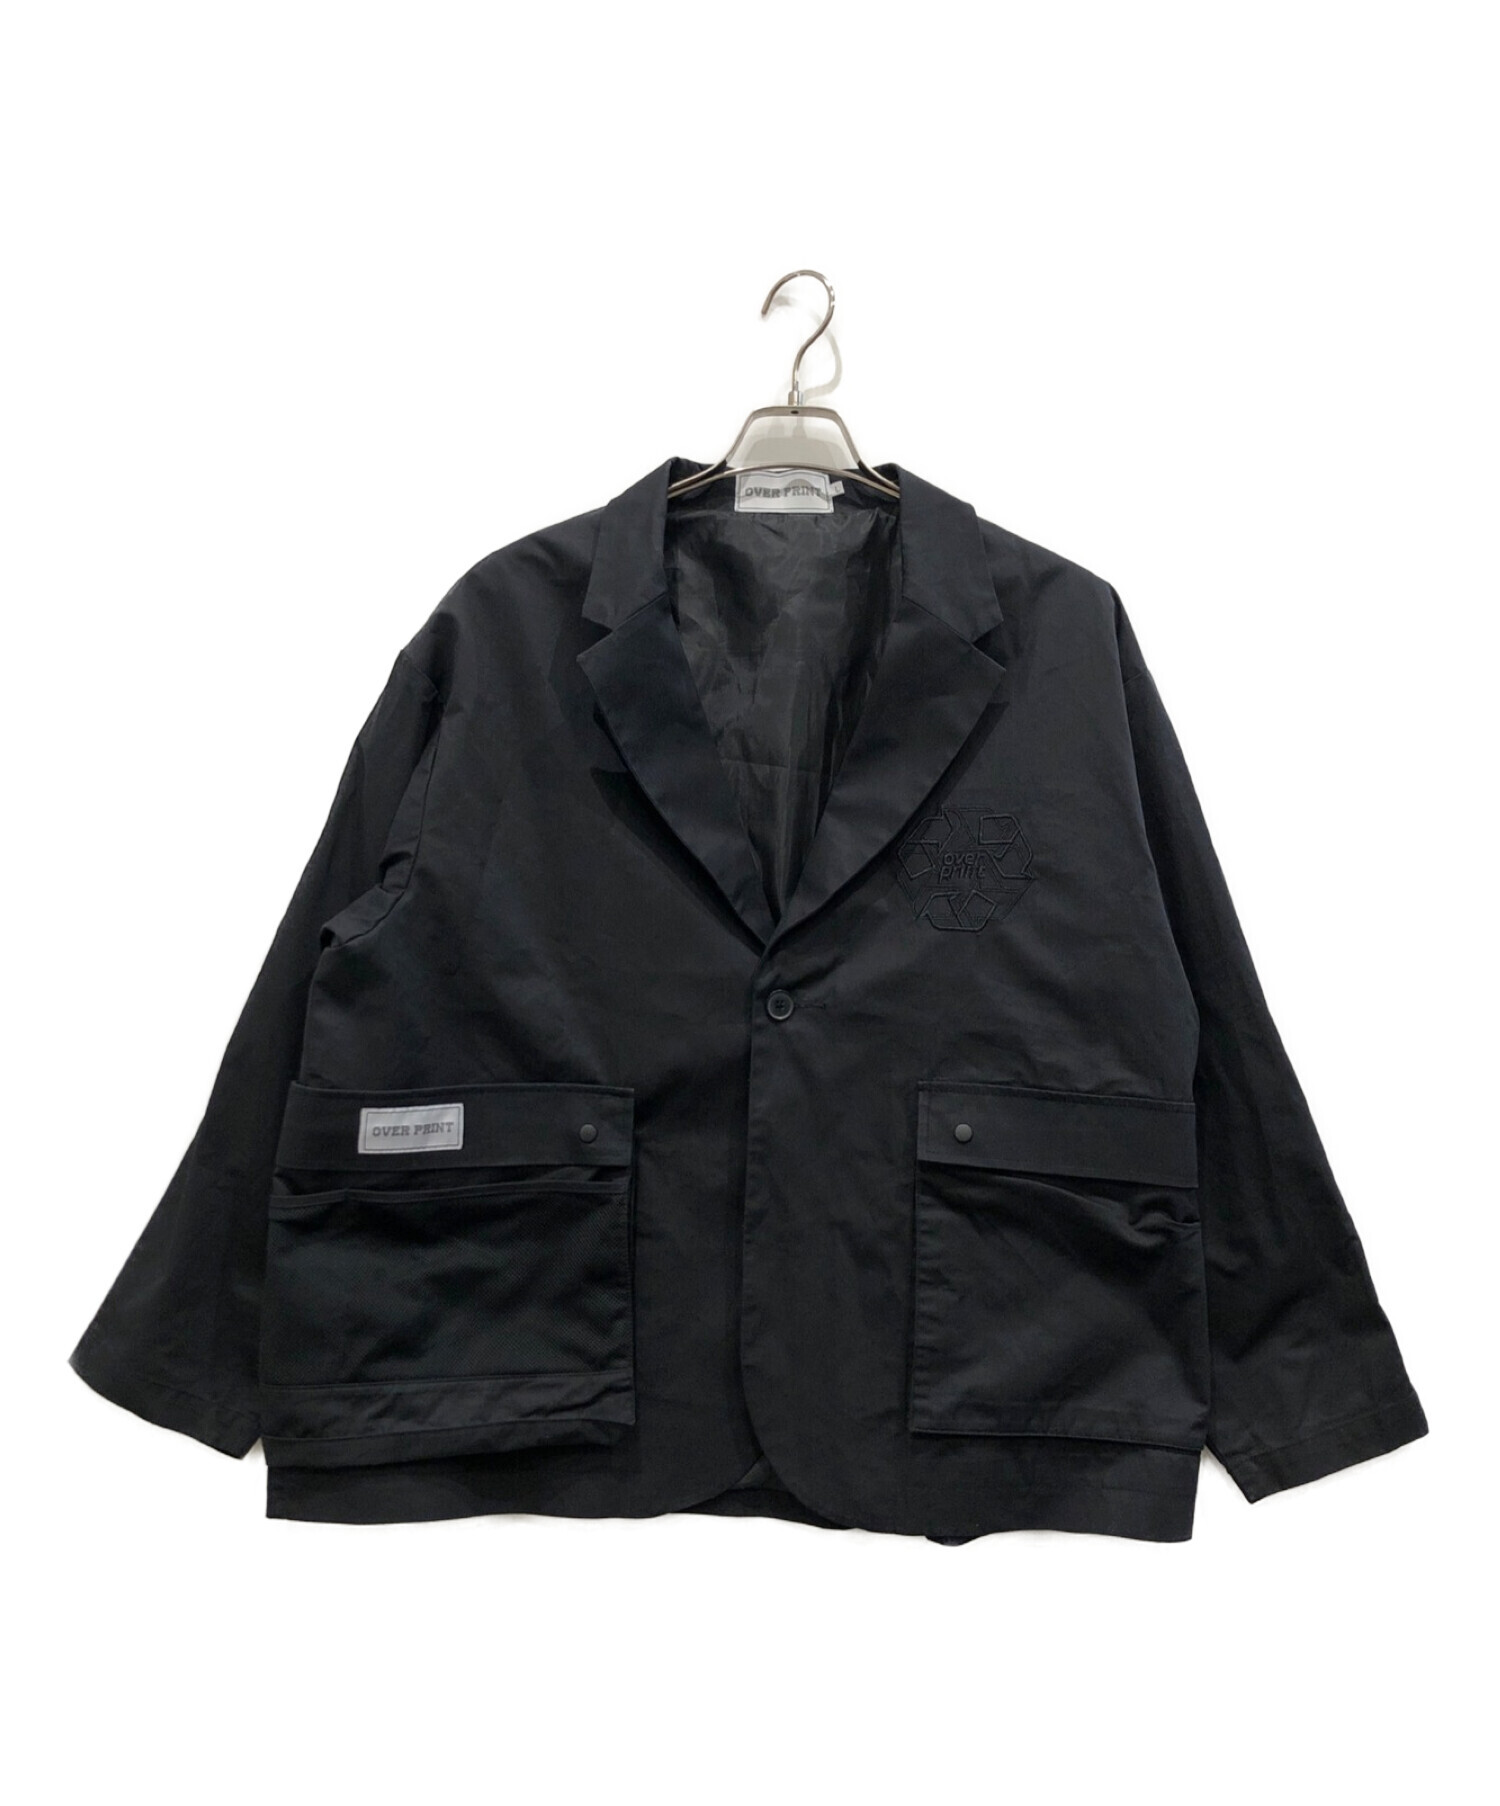 中古・古着通販】overprint (オーバープリント) tailored jacket ...